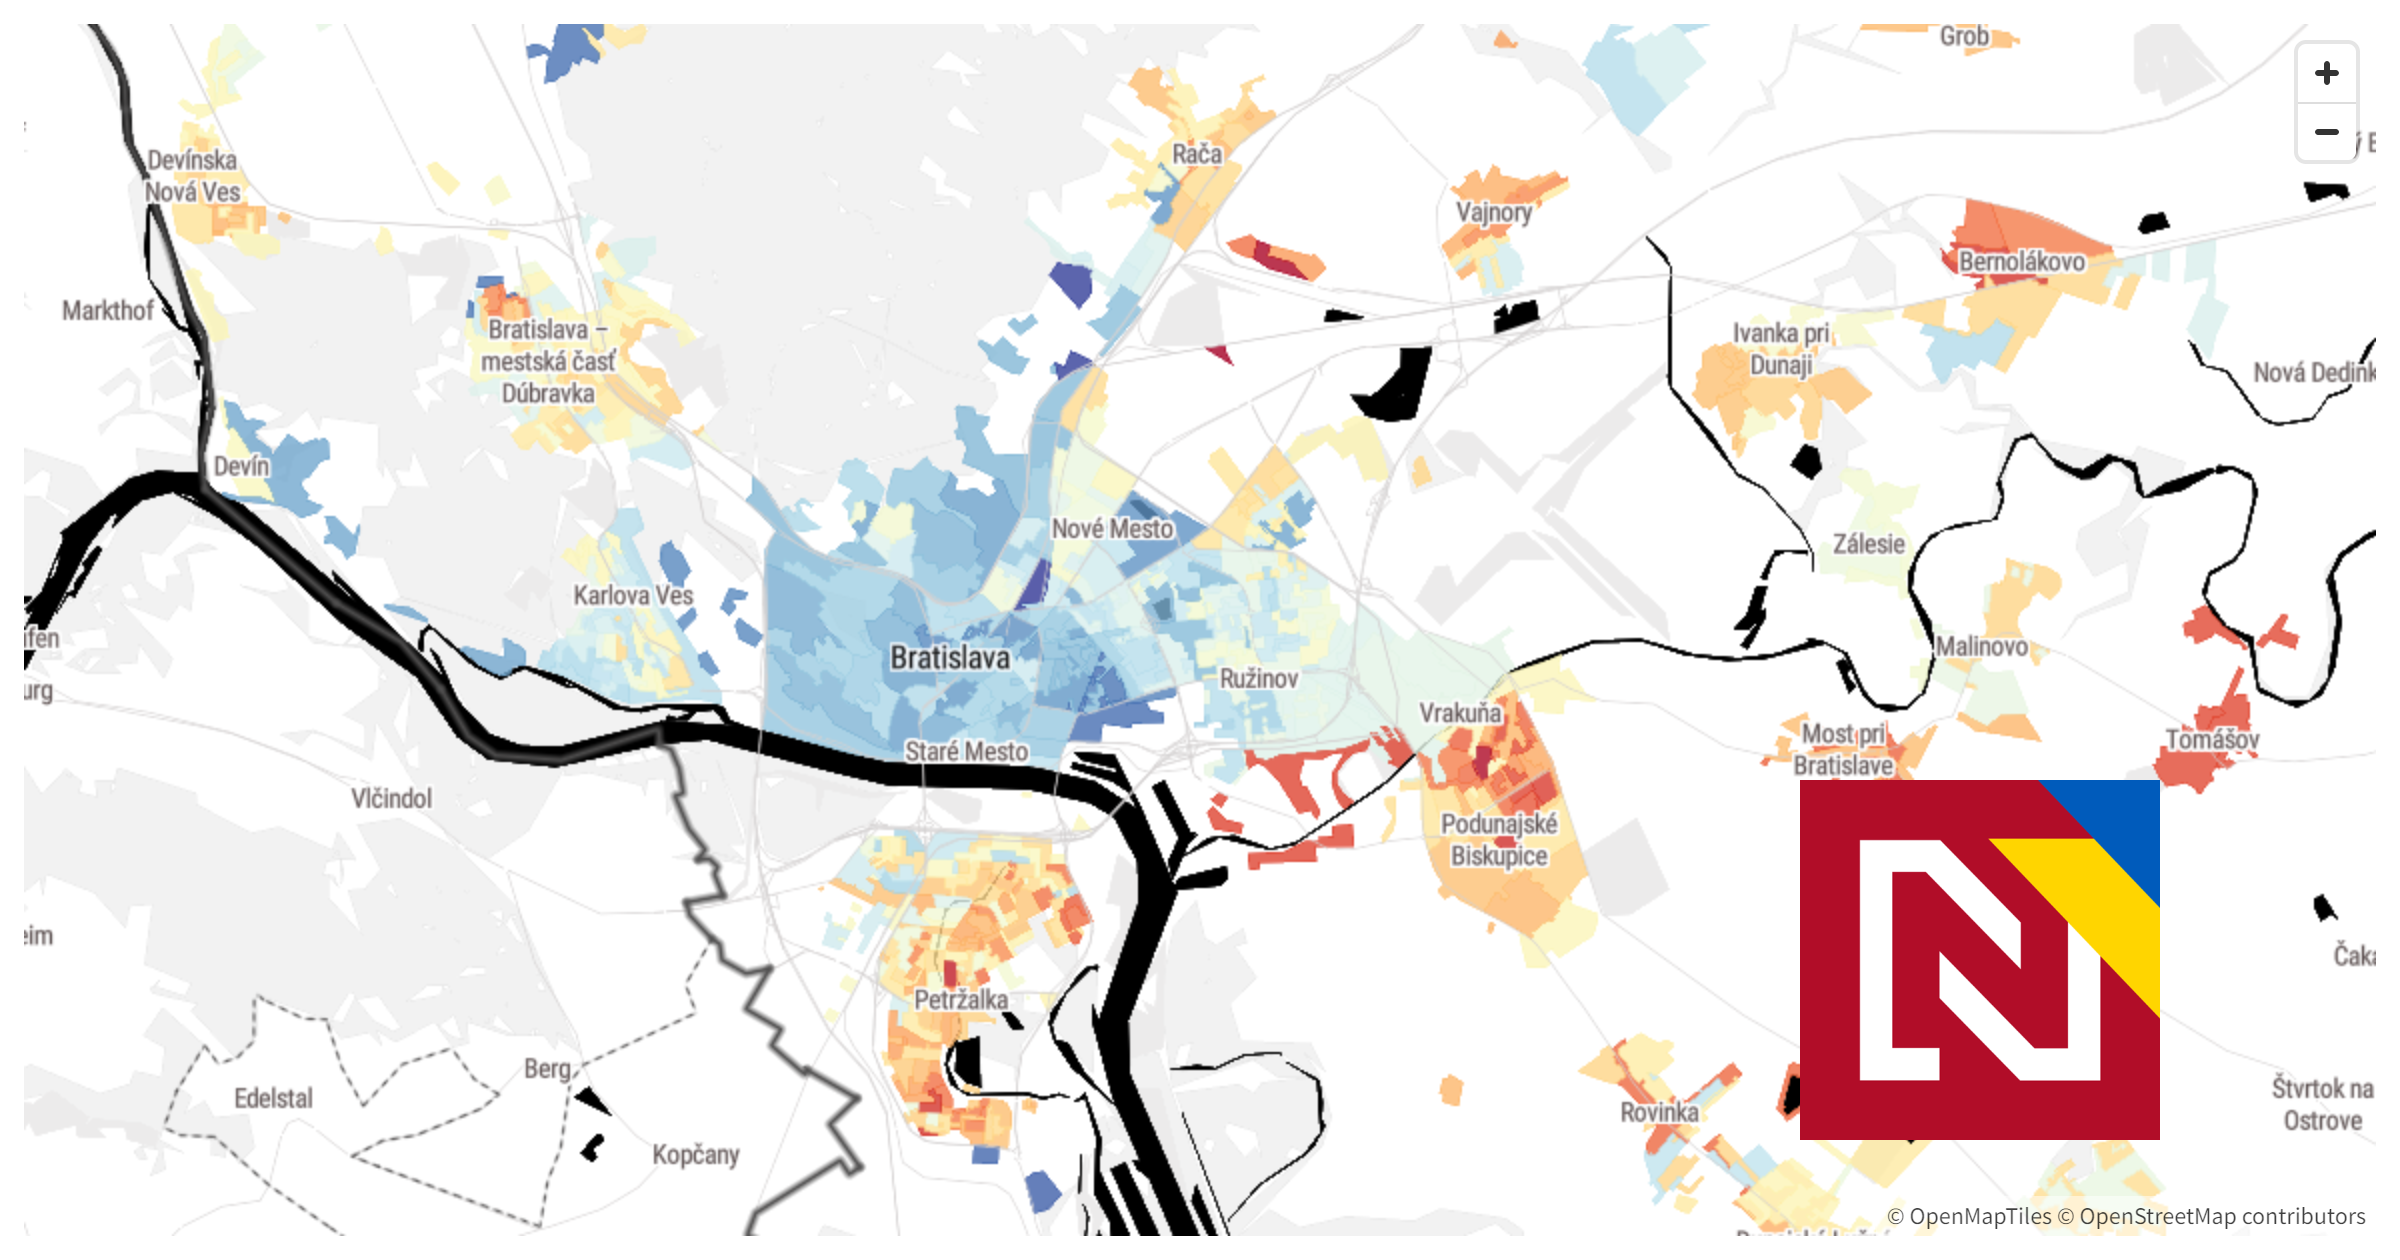 Unikátna mapa: Pozrite si, ako v Bratislave a jej okolí volili vaši susedia